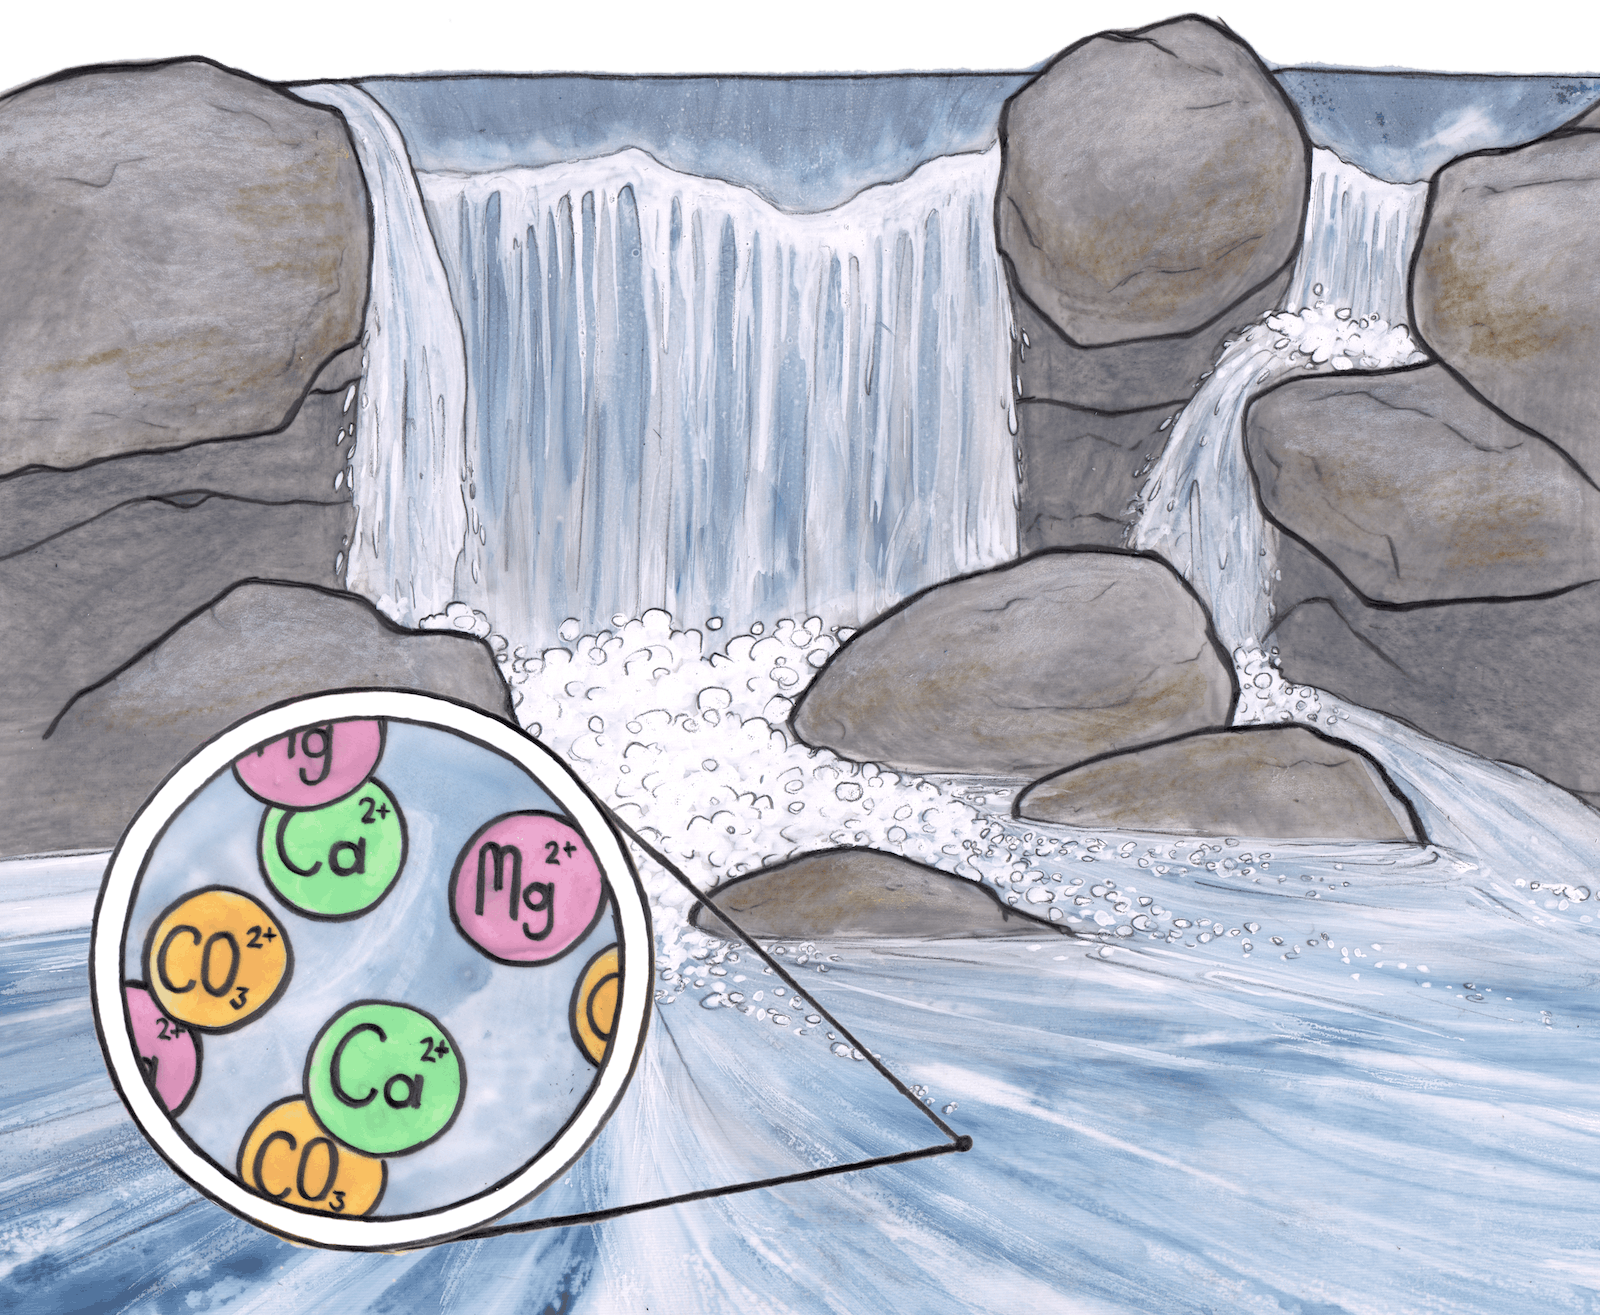 Croquis illustrant de l'eau qui s'écoule sur des rochers. Des ions de calcium, magnésium et carbonate sont illustrés par des sphères vertes, roses et jaunes dans une bulle agrandie.